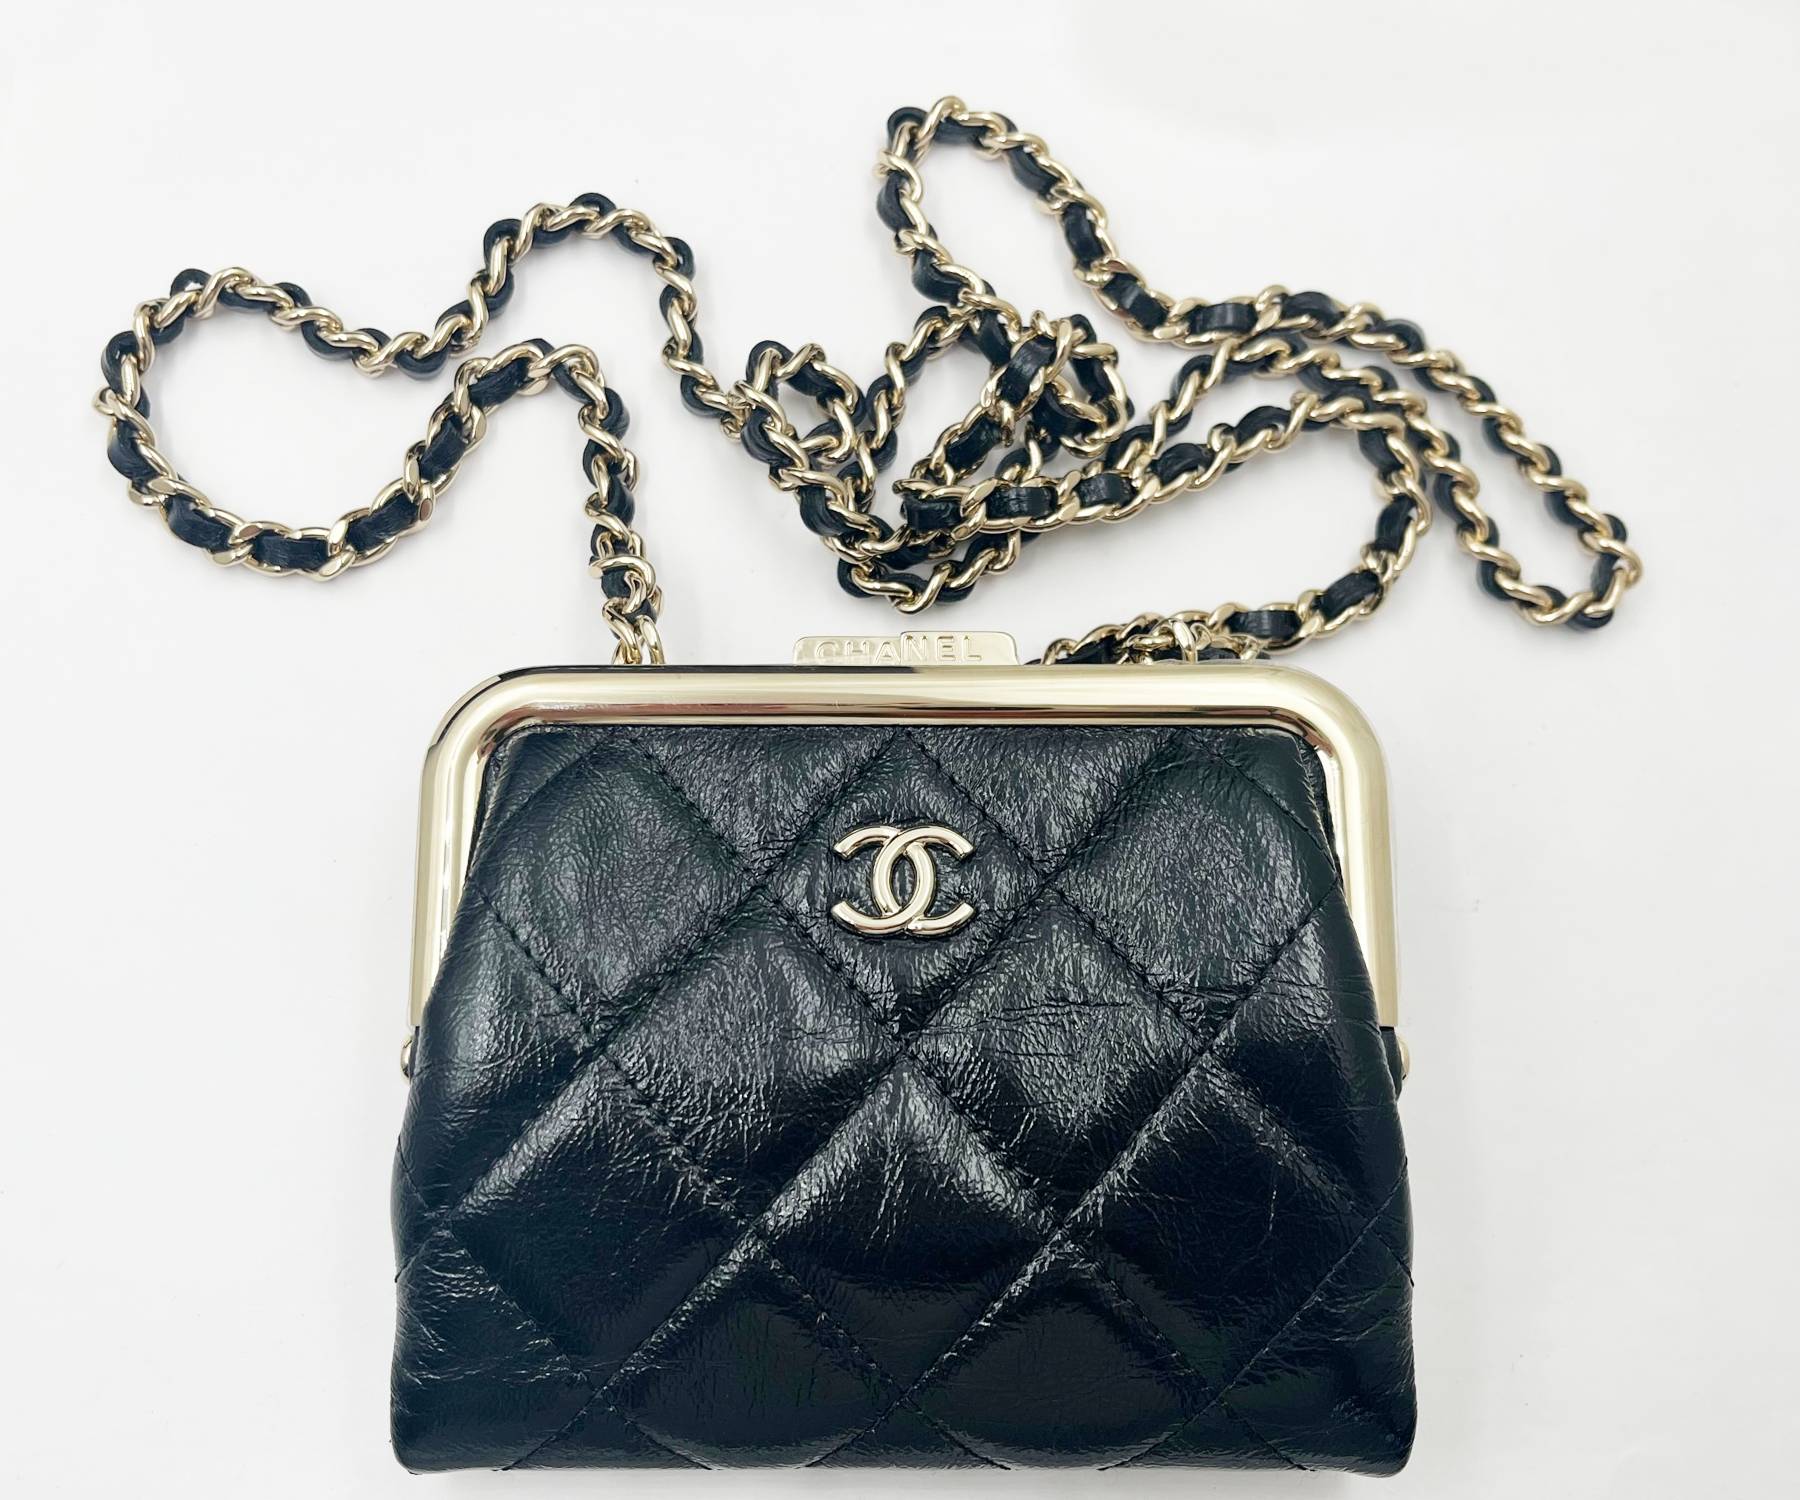 cc brand purse